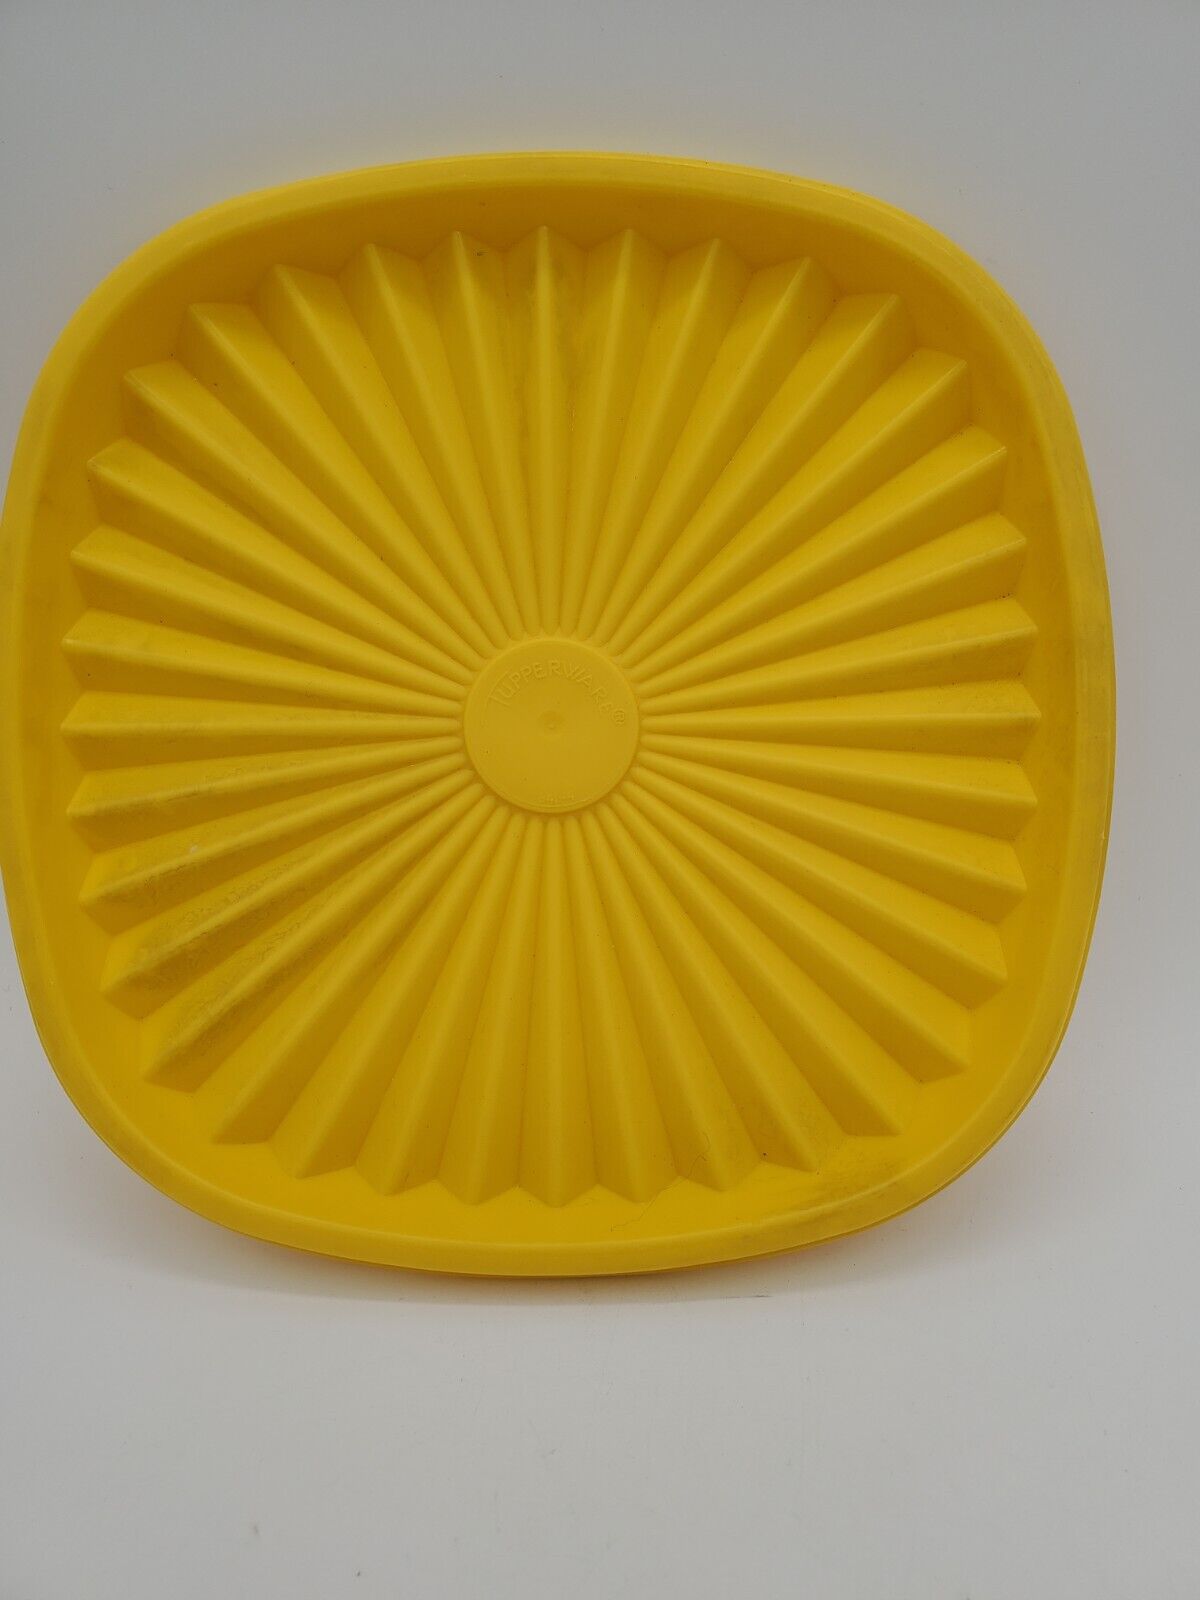 Vintage Tupperware Lid 841-4 MCM Yellow 6.5 Inch Diameter - (LID ONLY)